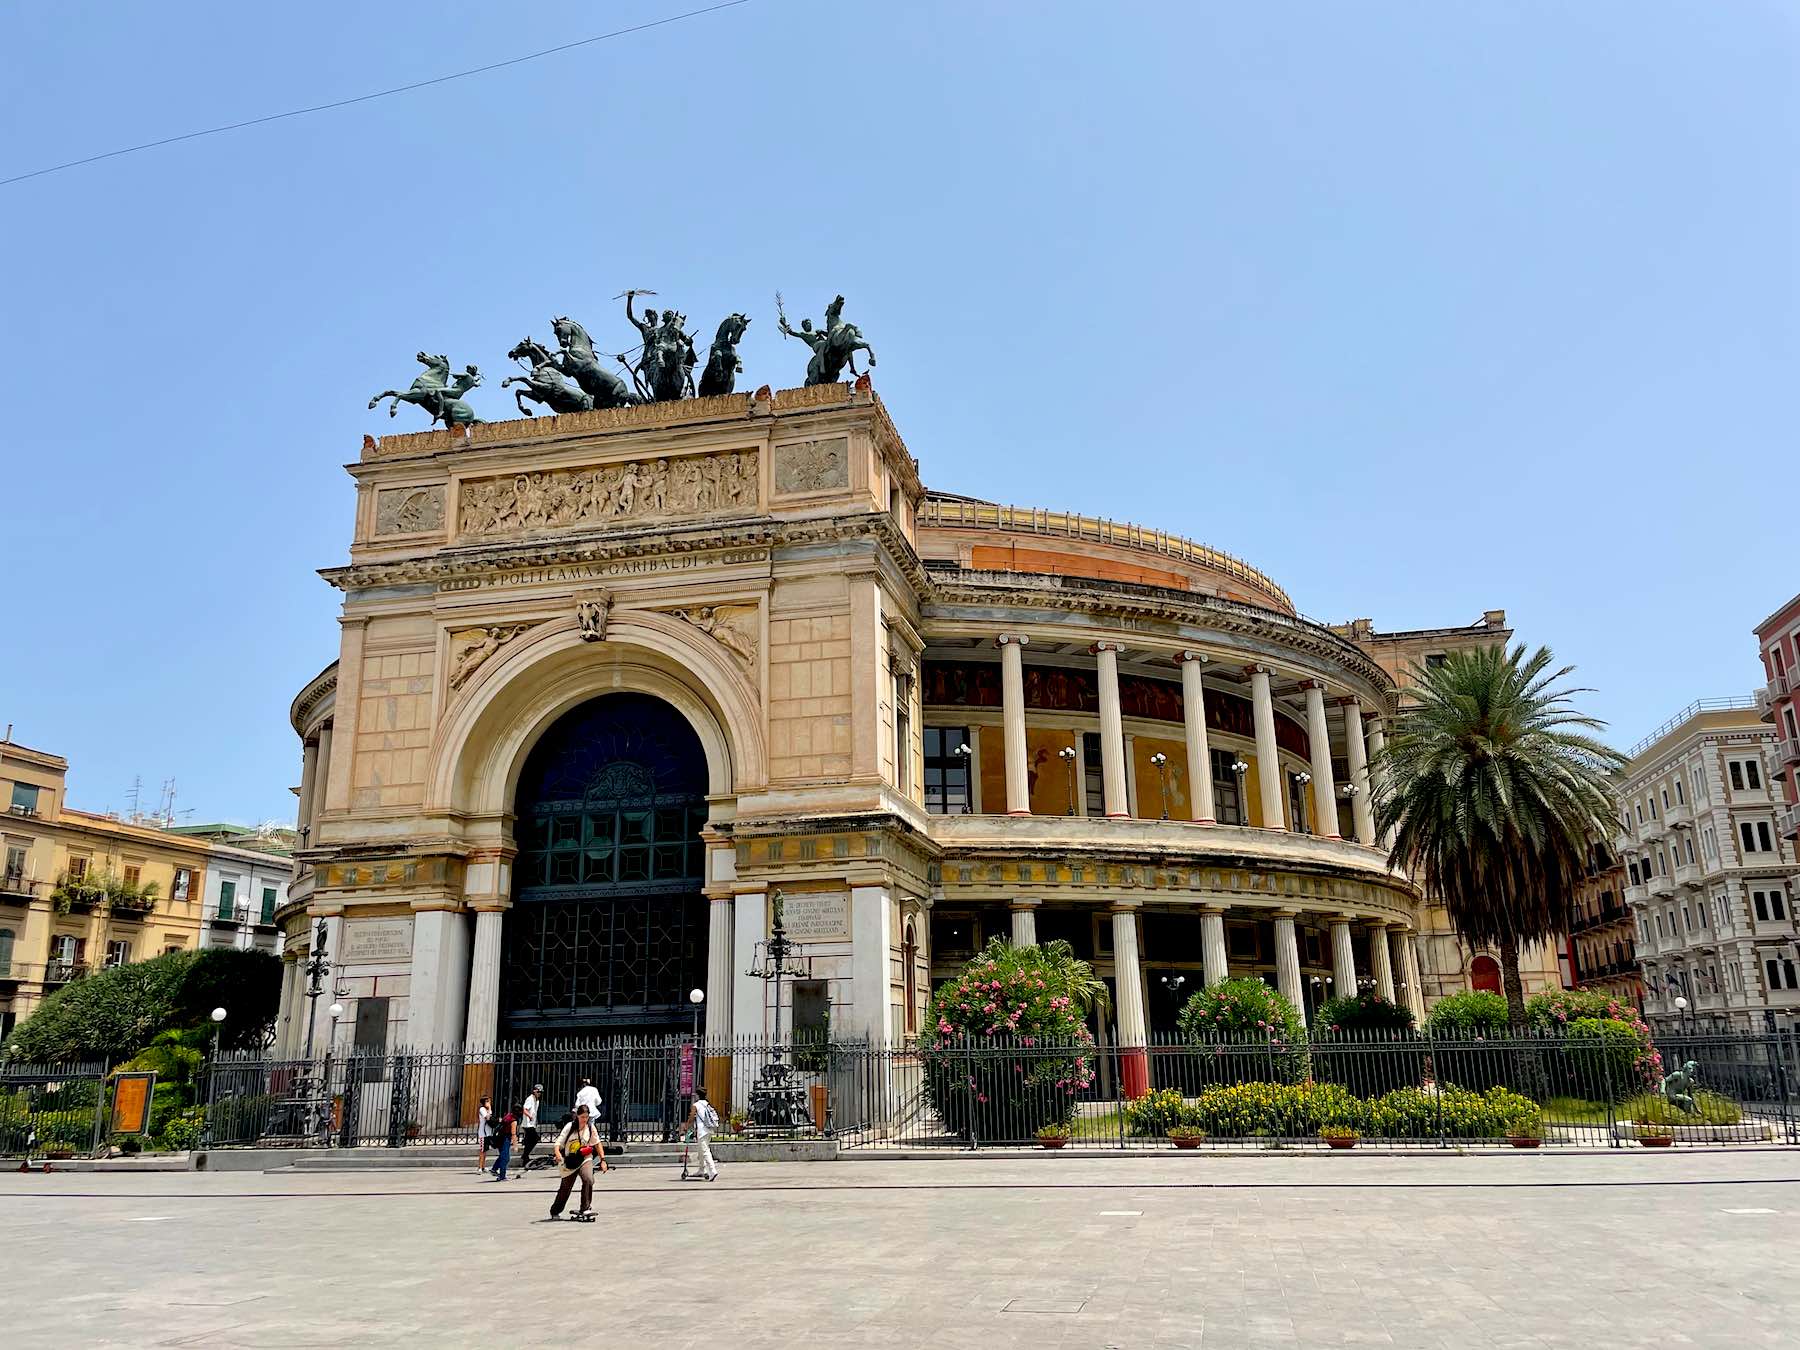 Fachada do Teatro Politeama Garibaldi em Palermo em um dia de sol de verão